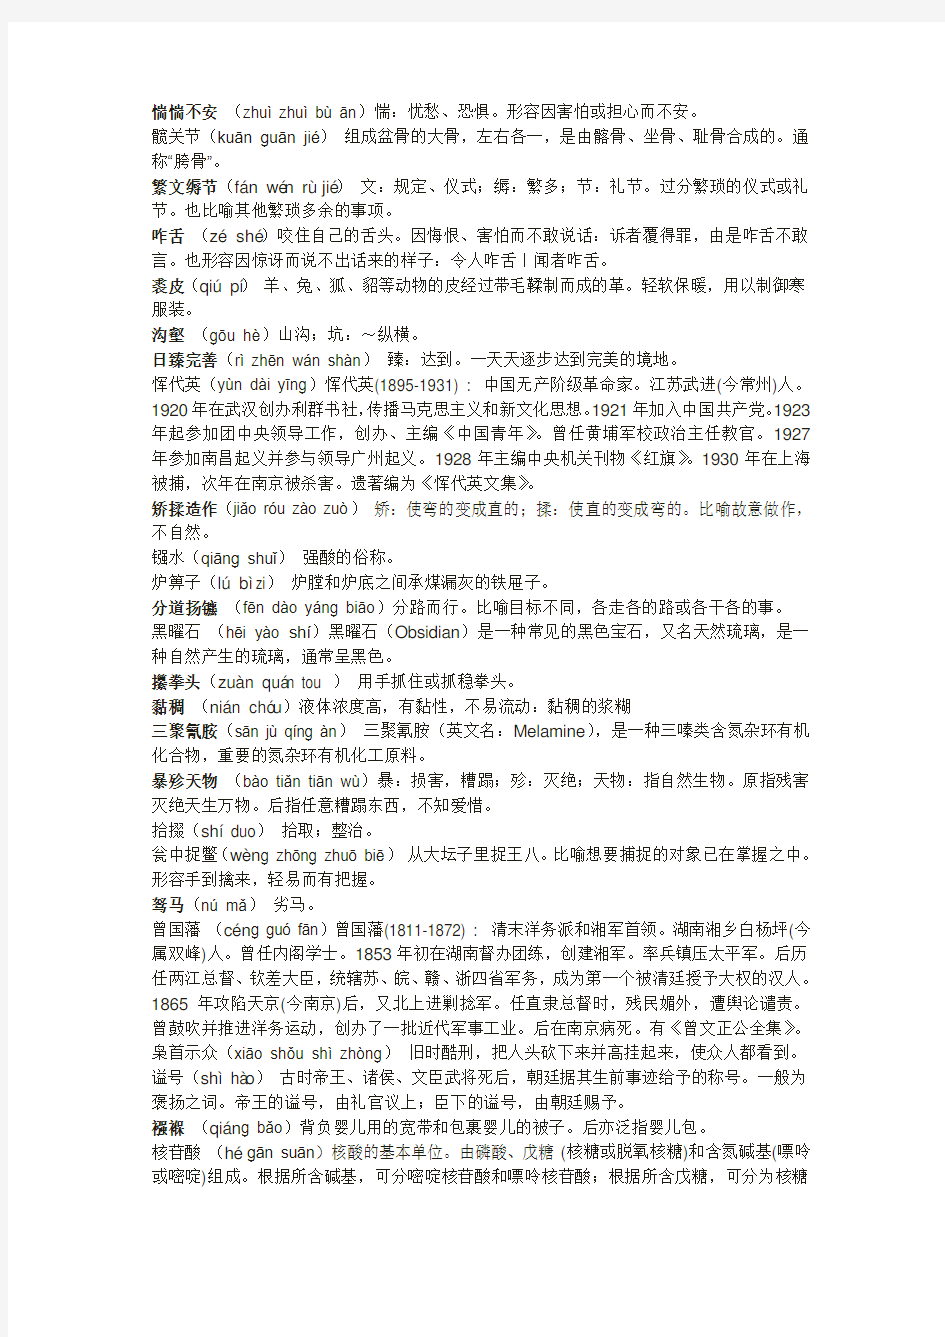 2013年中国汉字听写大会题目(全部13期)